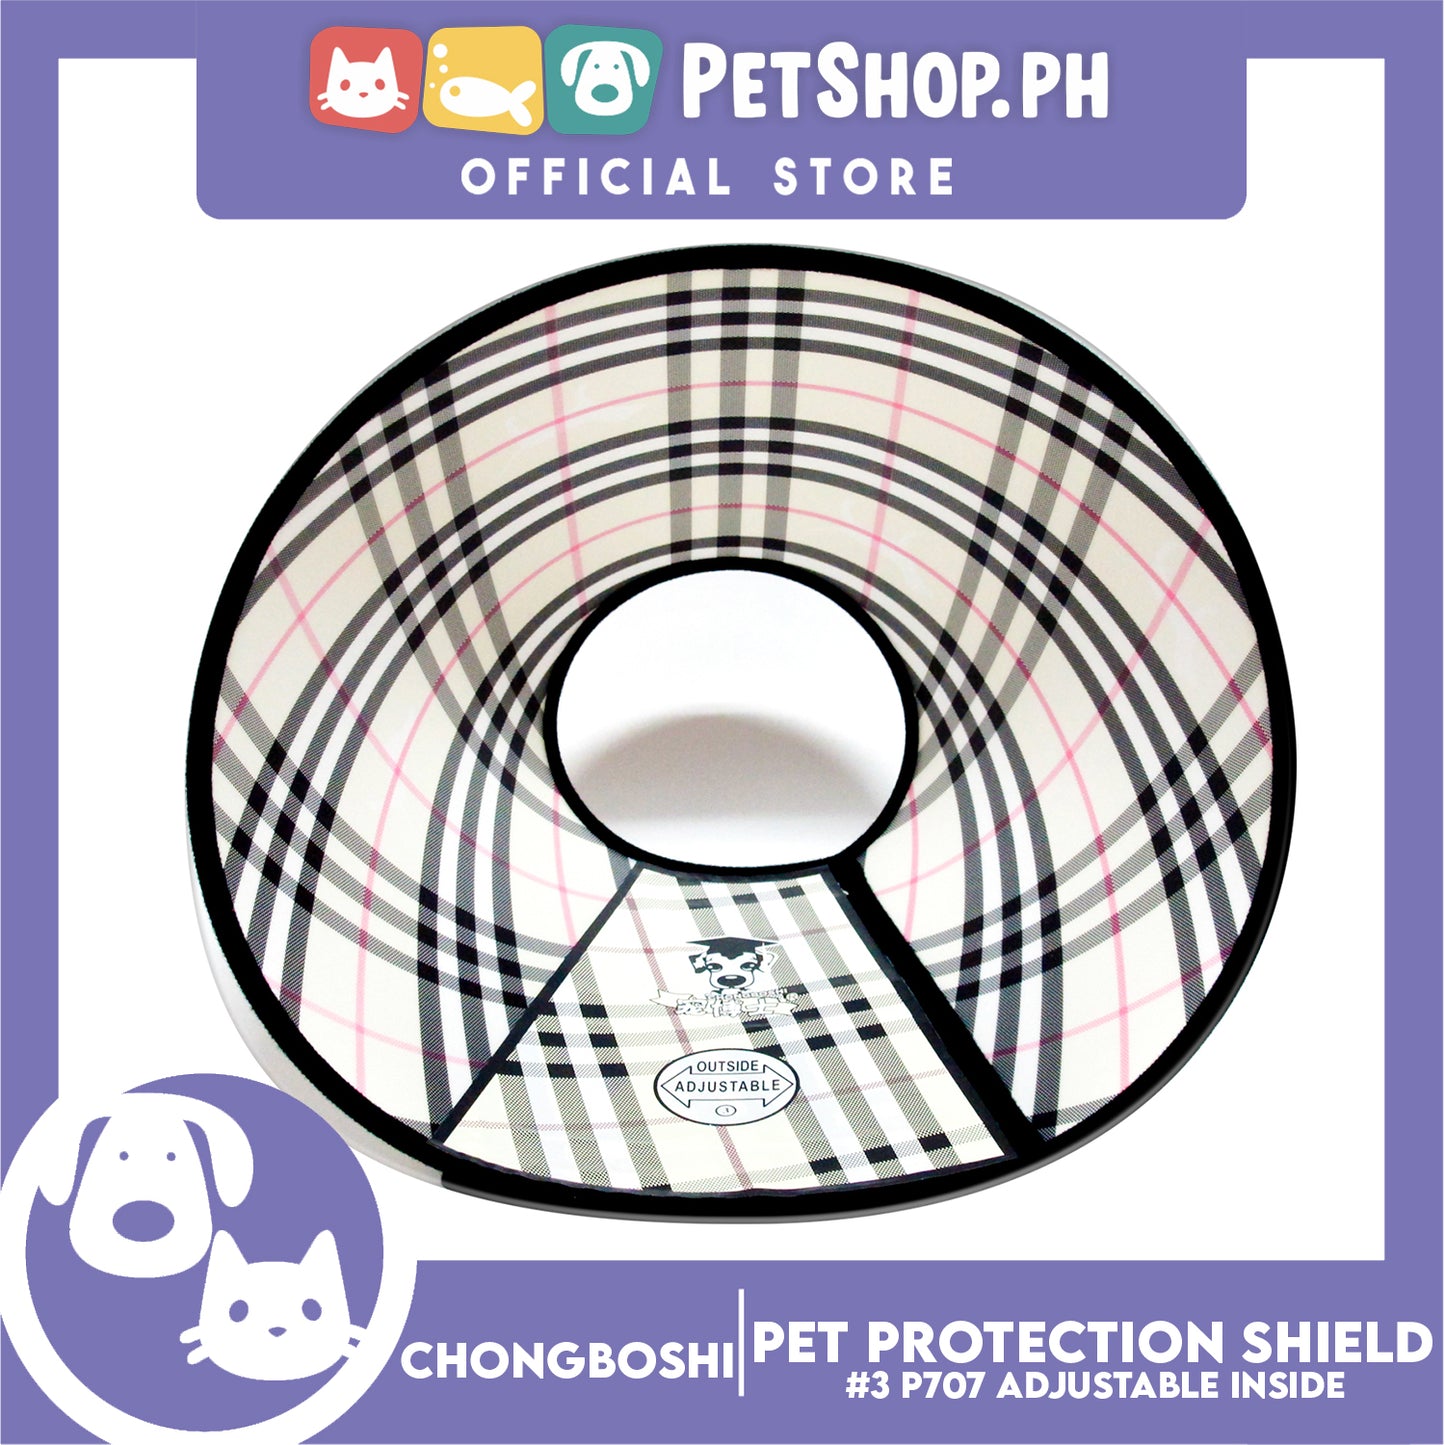 Chongboshi Pet Protection Shield 3 P707